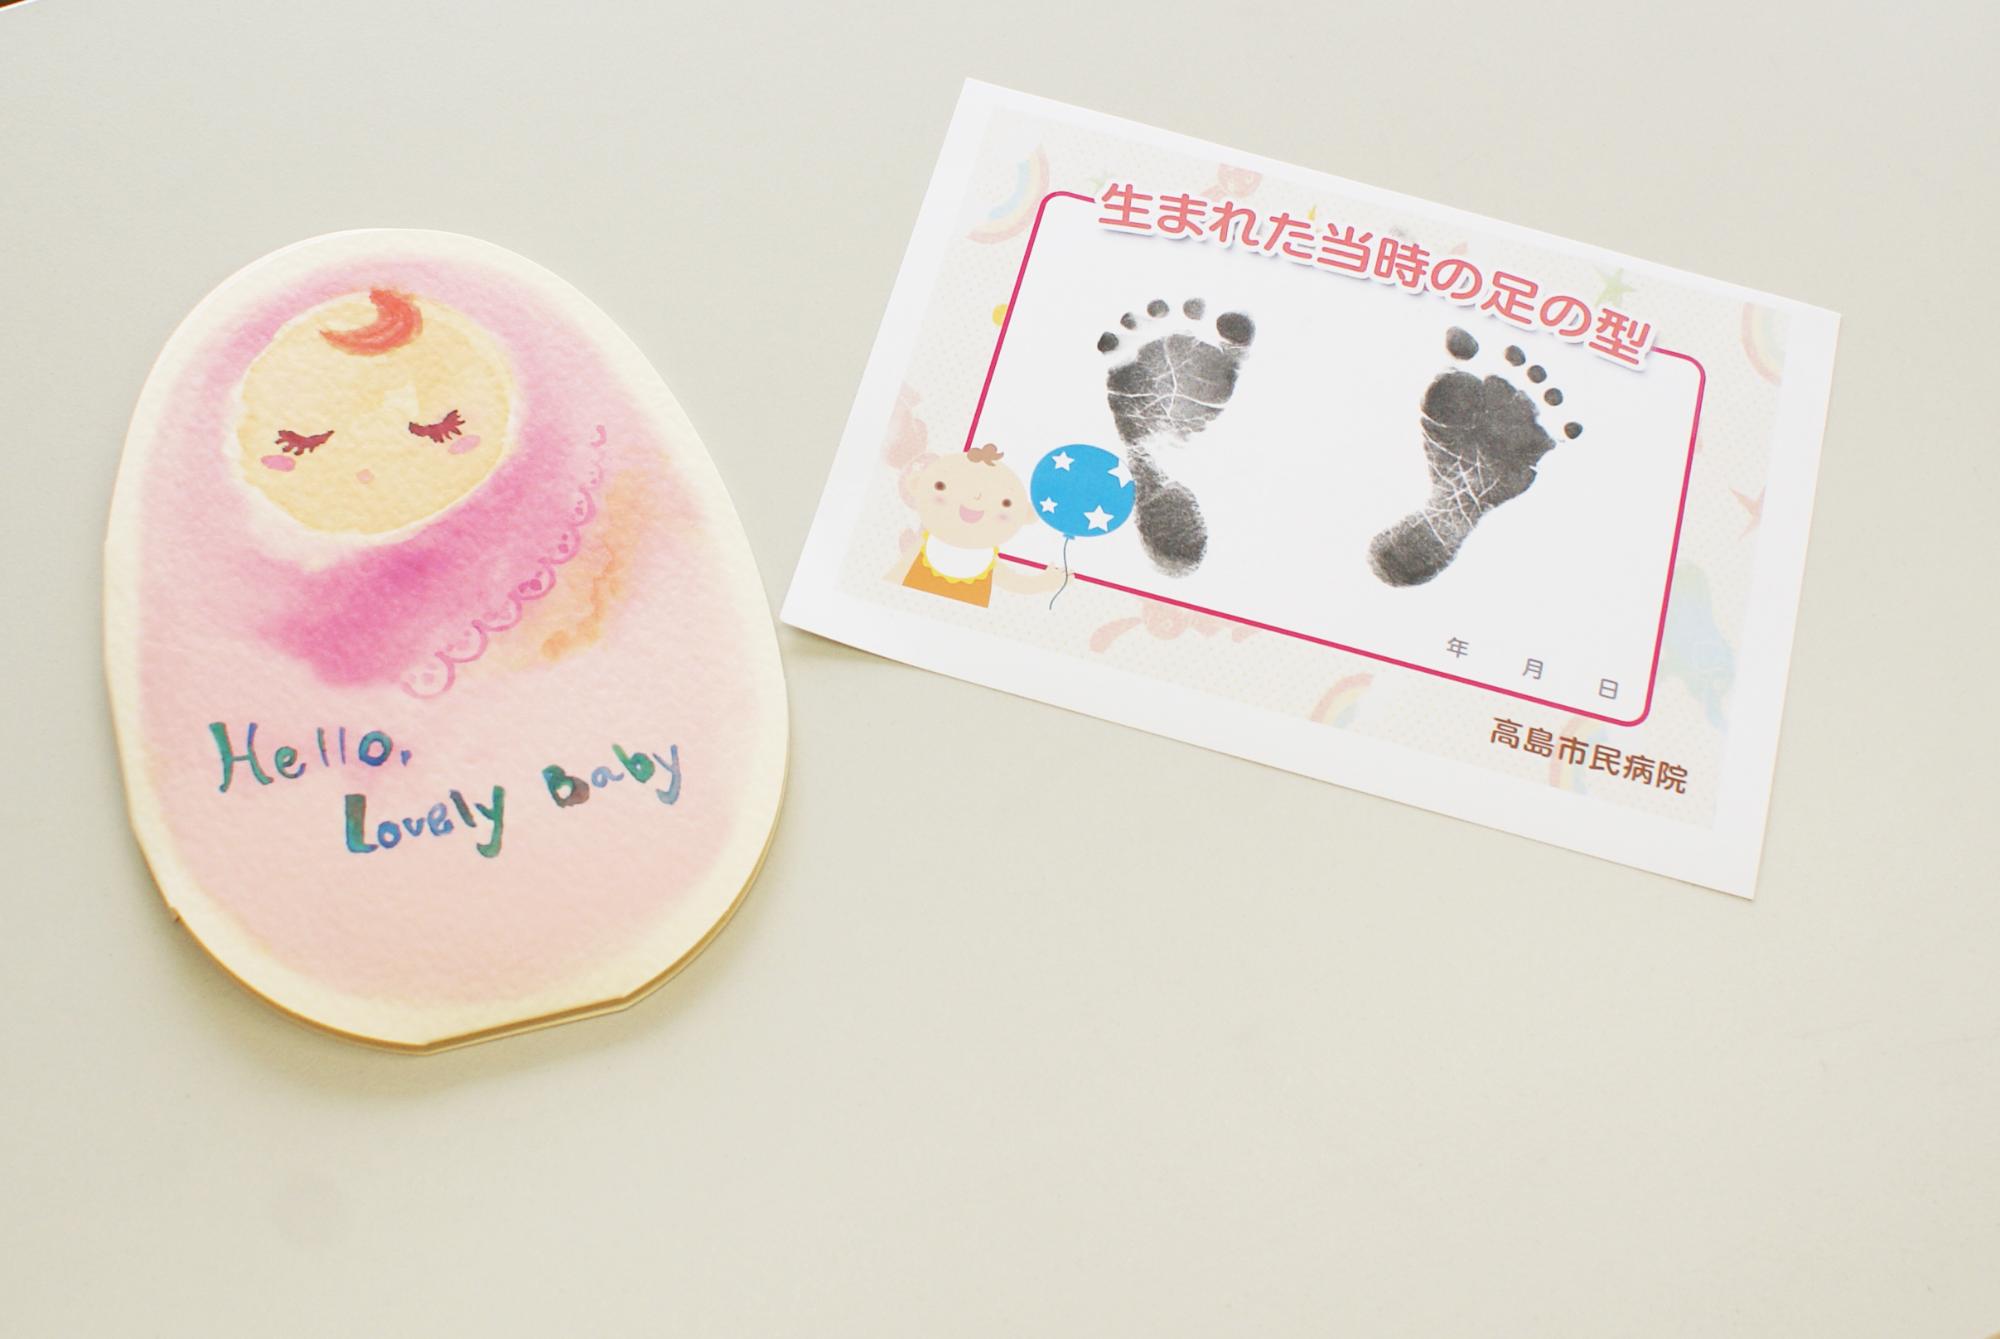 赤ちゃんのイラストが描かれたボイスカードと、赤ちゃんの足型が写された用紙の写真